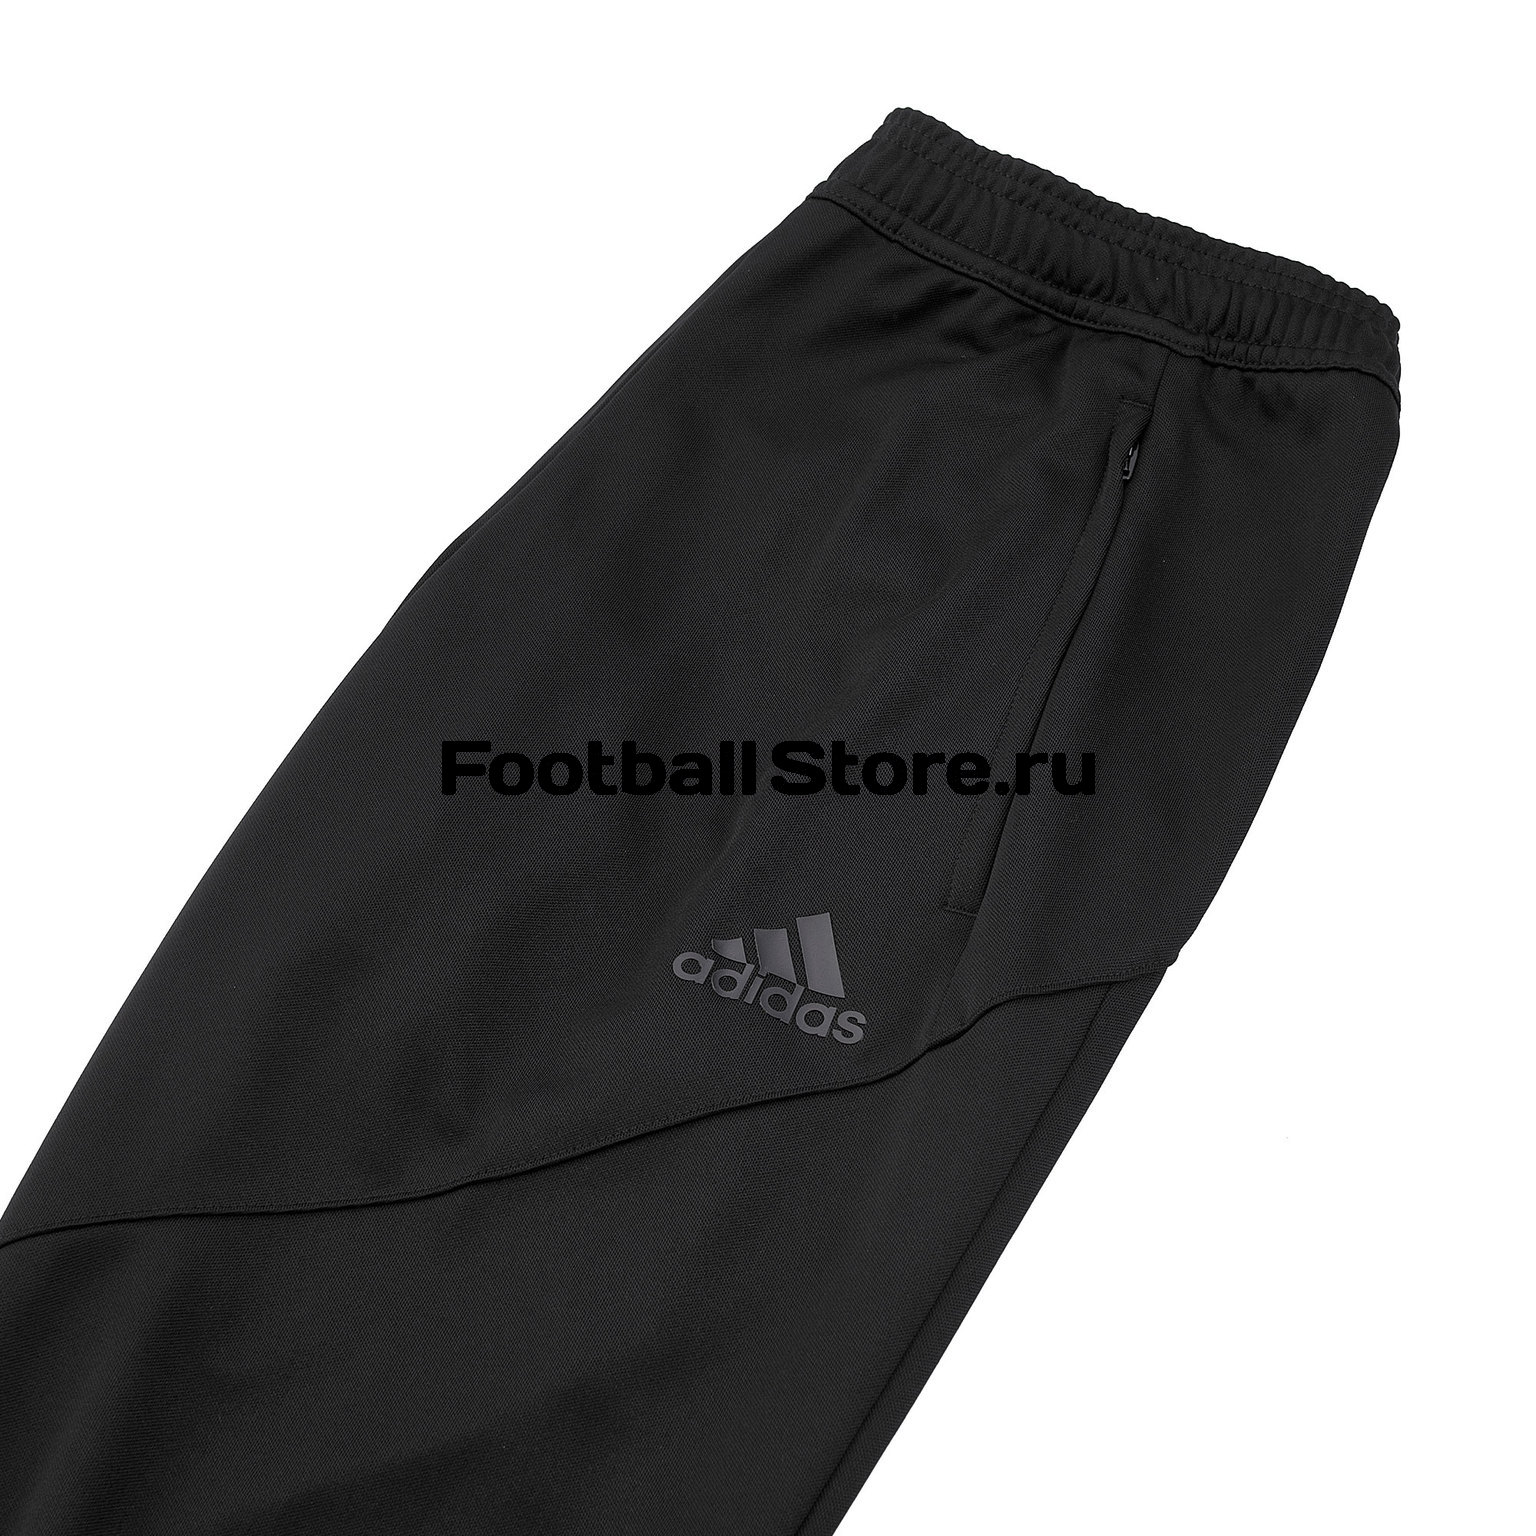 Брюки Adidas Tango EC8553 – купить в интернет магазине footballstore, цена,фото